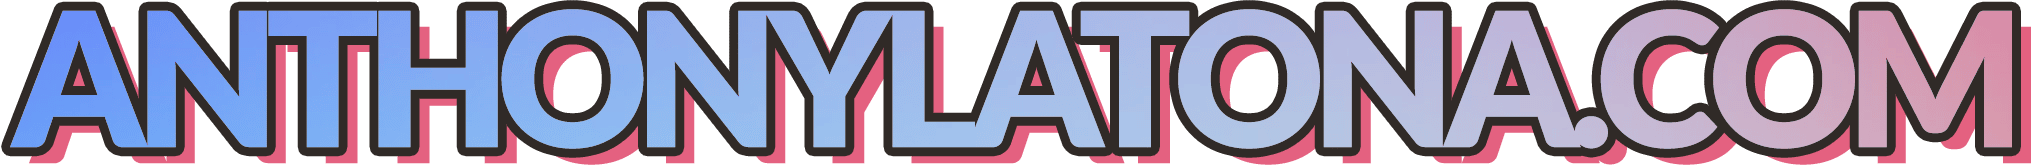 al_com_logo_gradient